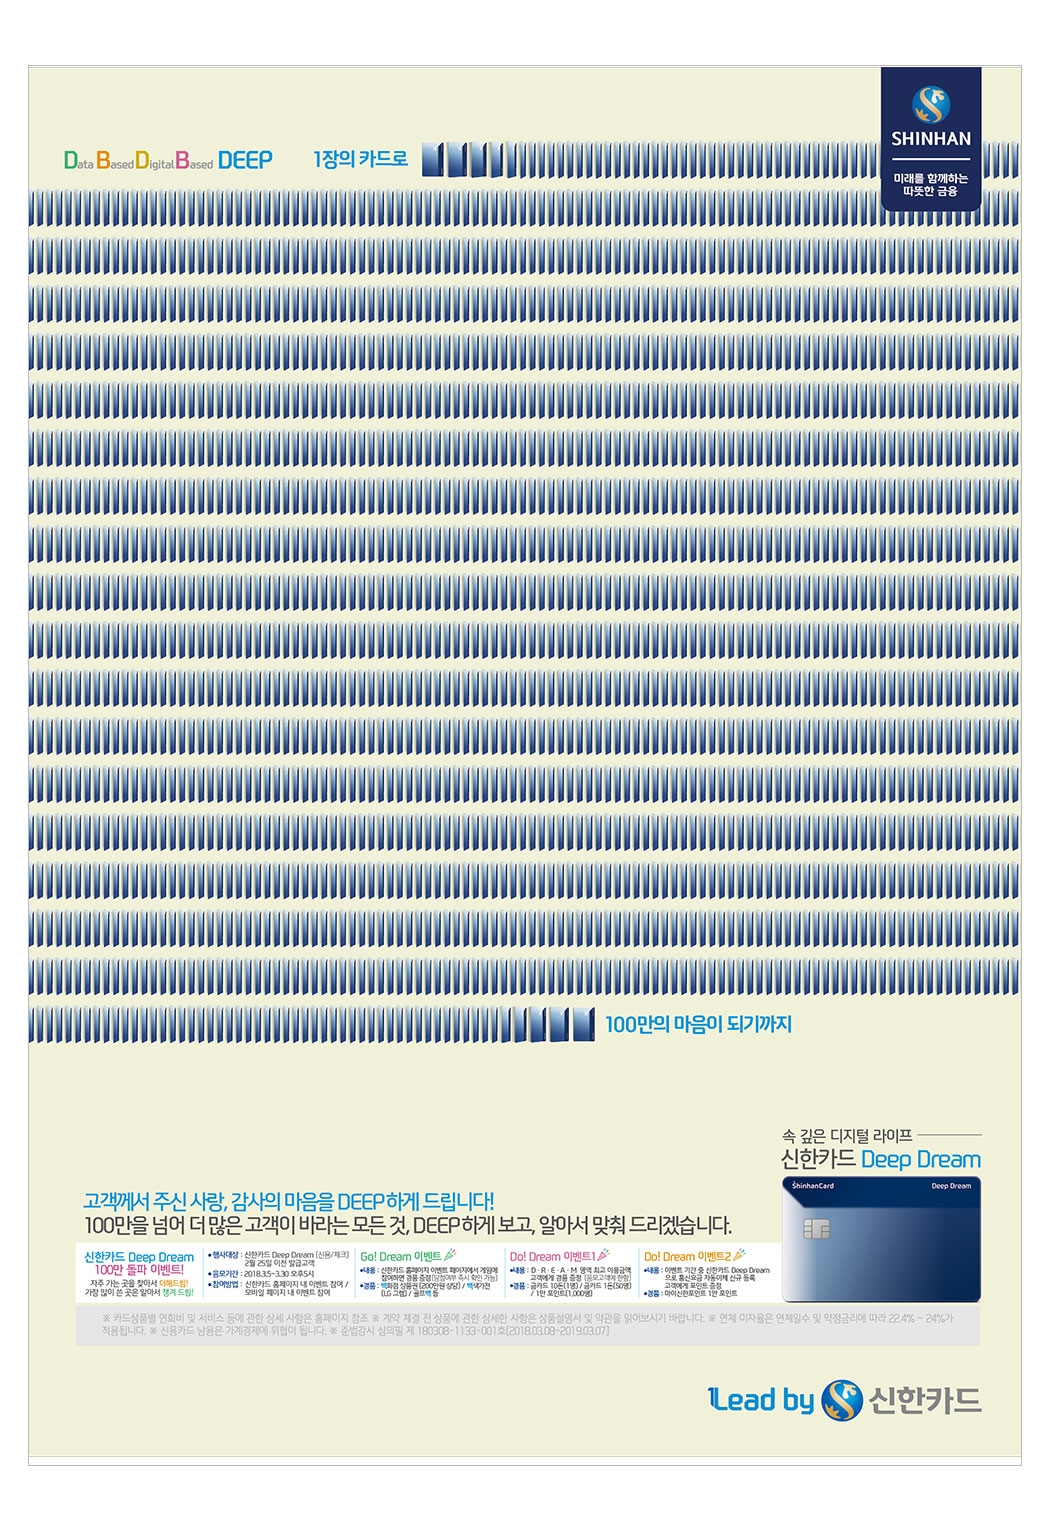 신한카드 DeepDream(100만돌파) 인쇄광고 이미지